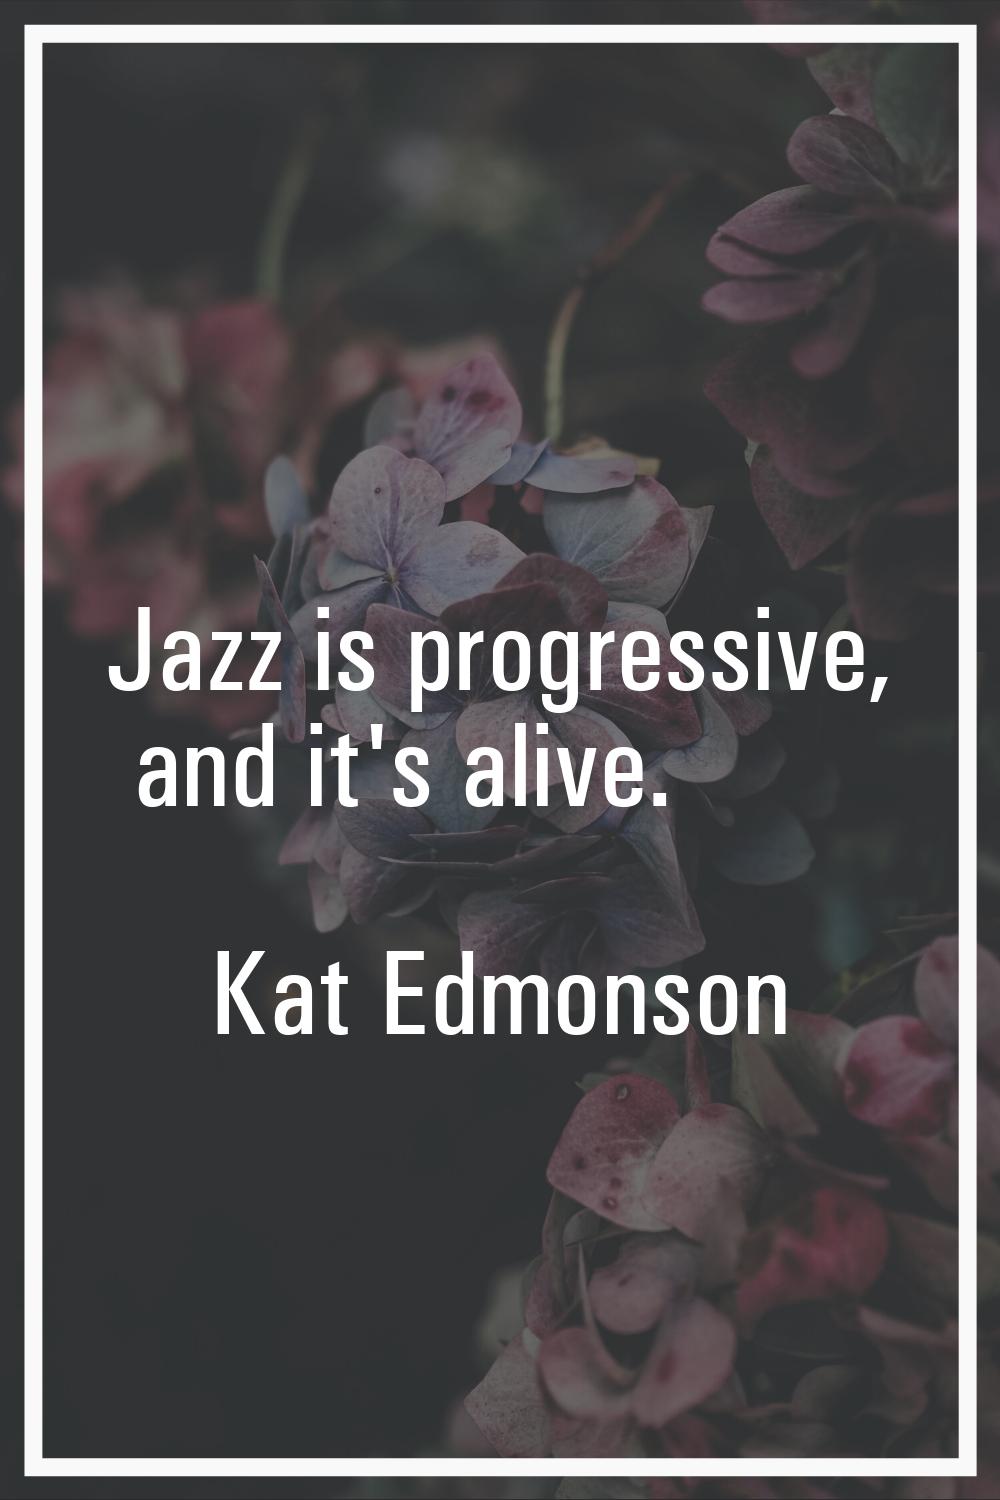 Jazz is progressive, and it's alive.